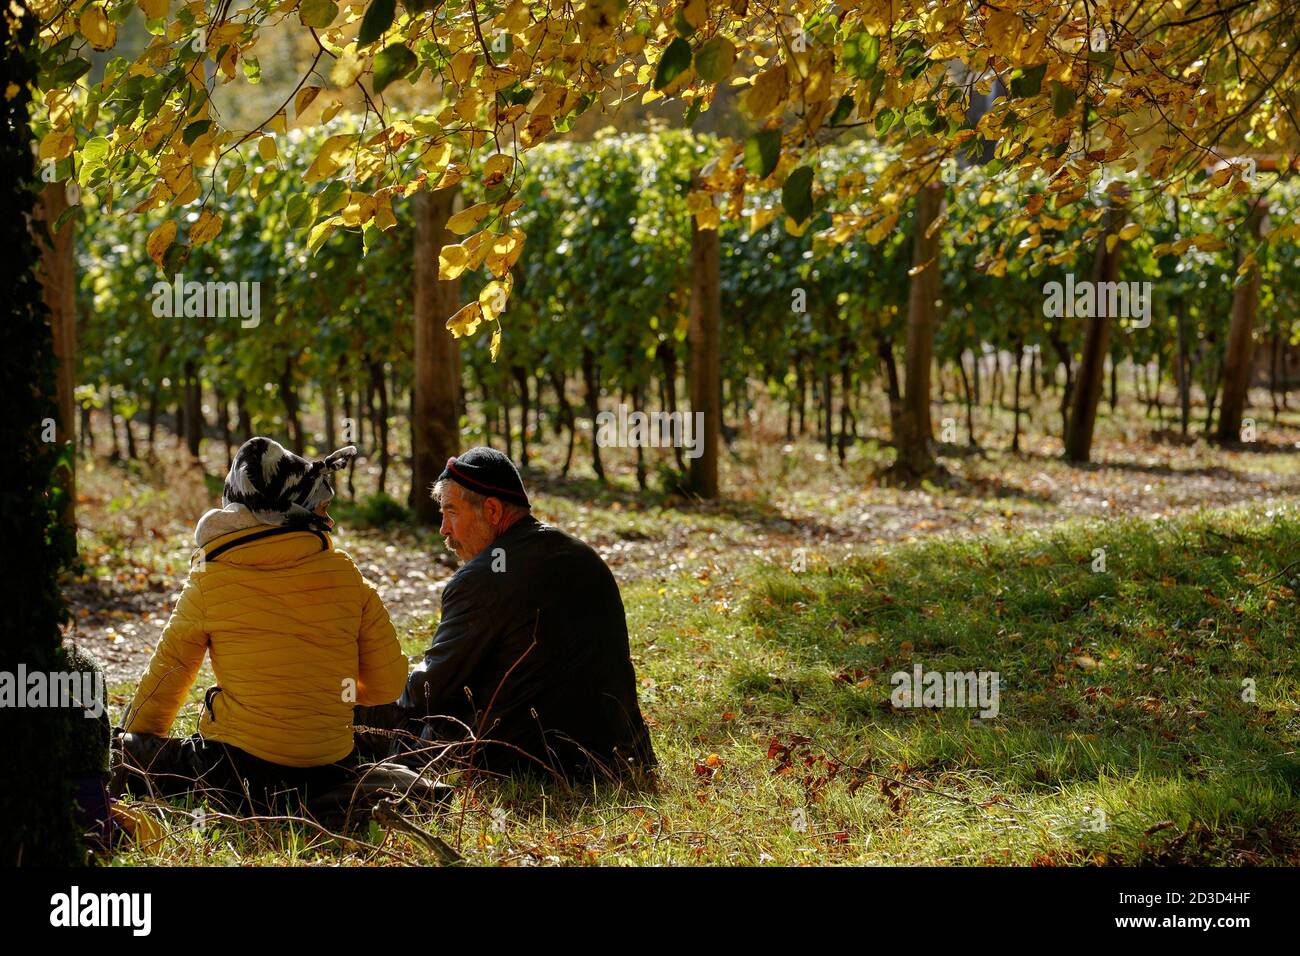 Les travailleurs se détendent avec un déjeuner pique-nique au milieu des vignes, tandis que la récolte du raisin Chardonnay a lieu au vignoble et à la cave de vinification de Hambledon, Hampshire, au Royaume-Uni, le mercredi Banque D'Images